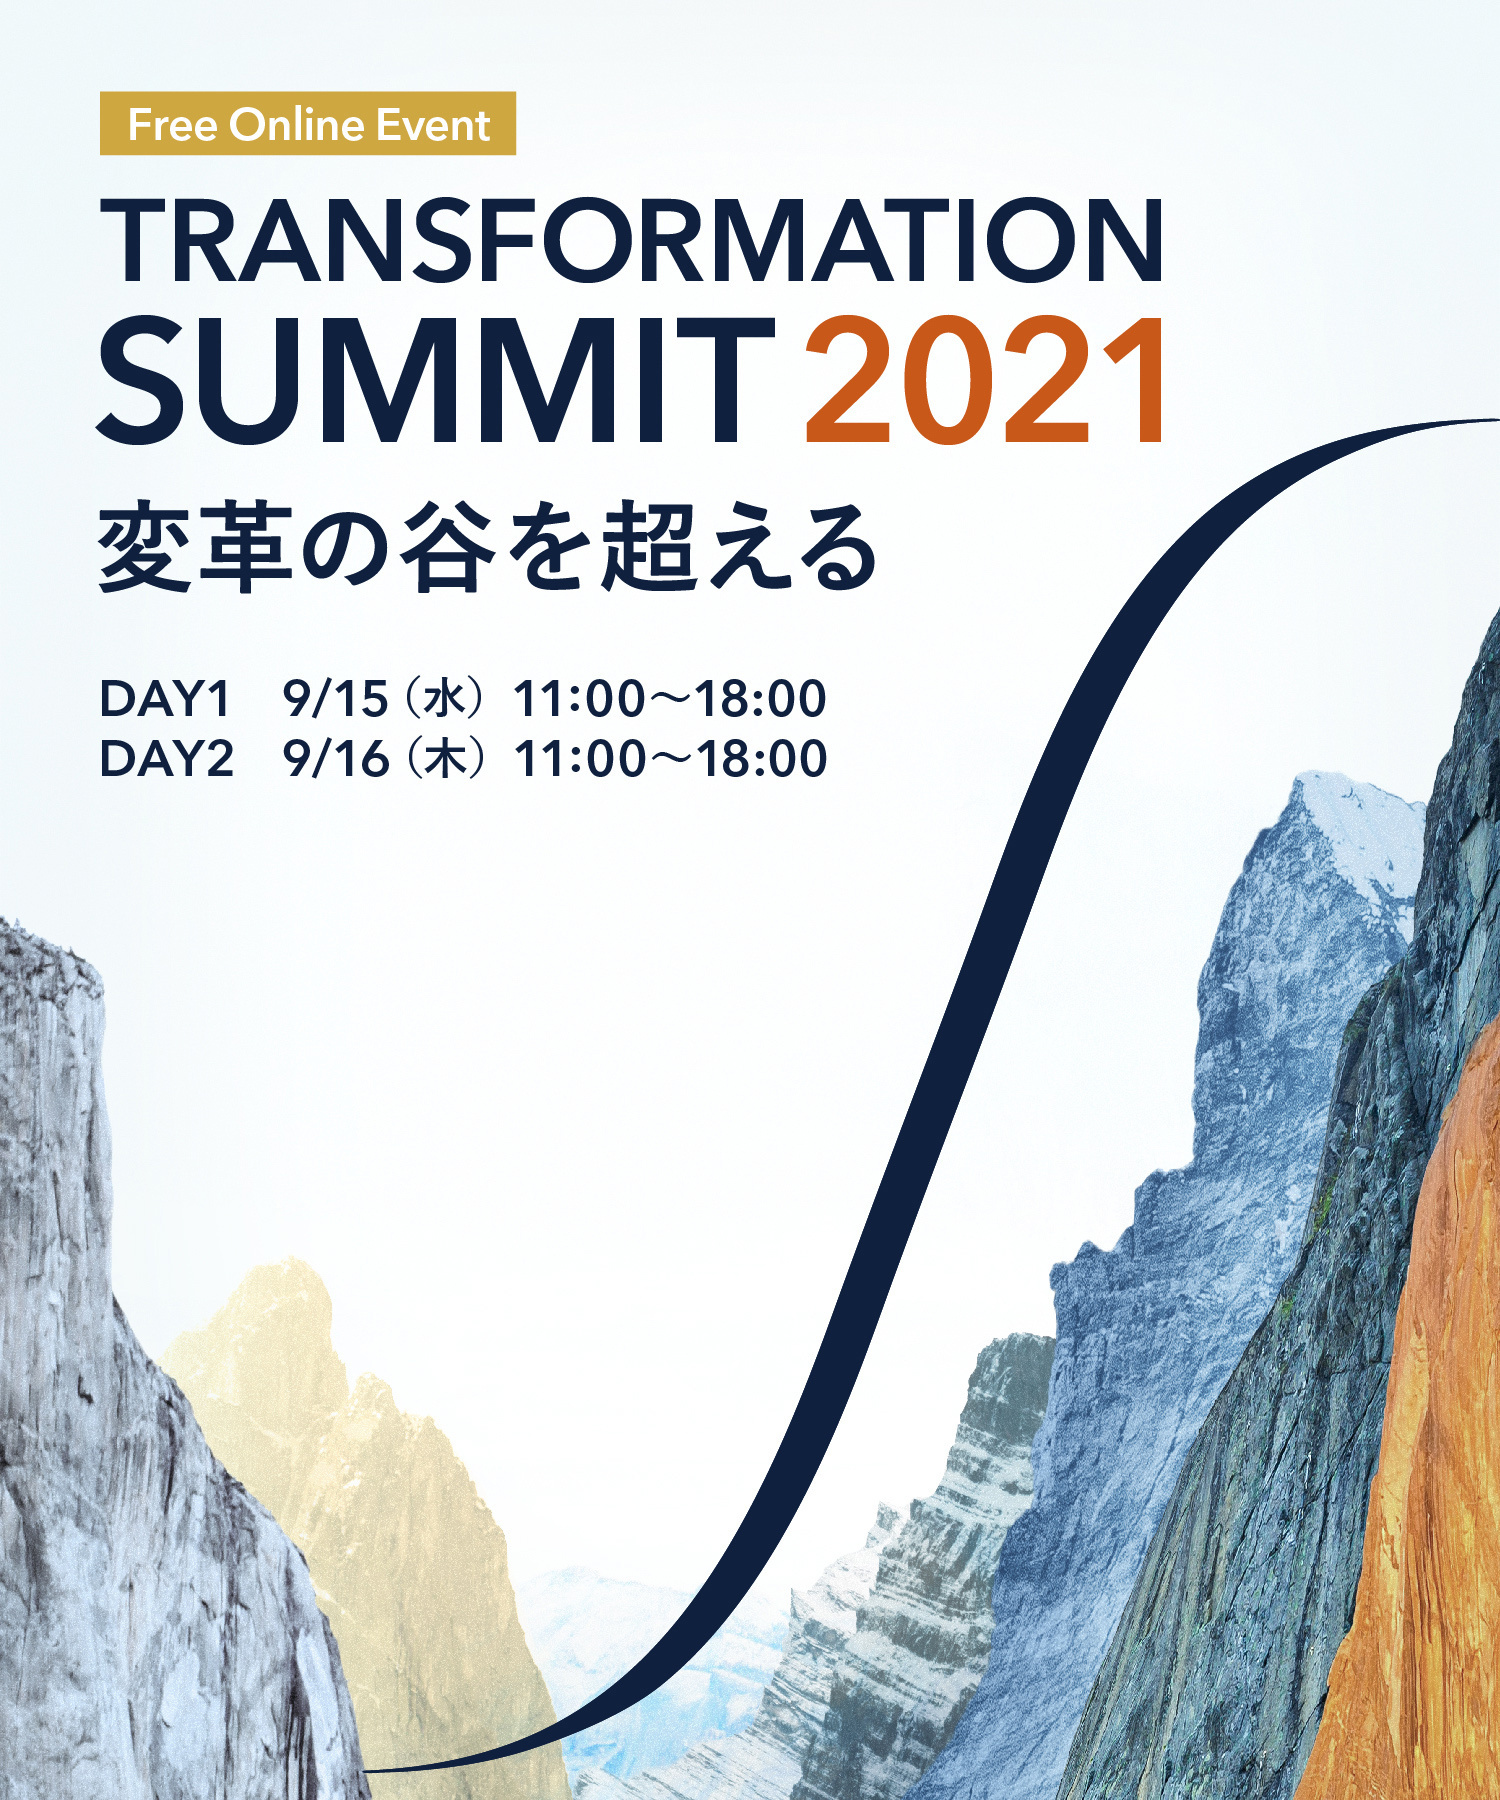 TRANSFORMATION SUMMIT 2021 変革の谷を超える